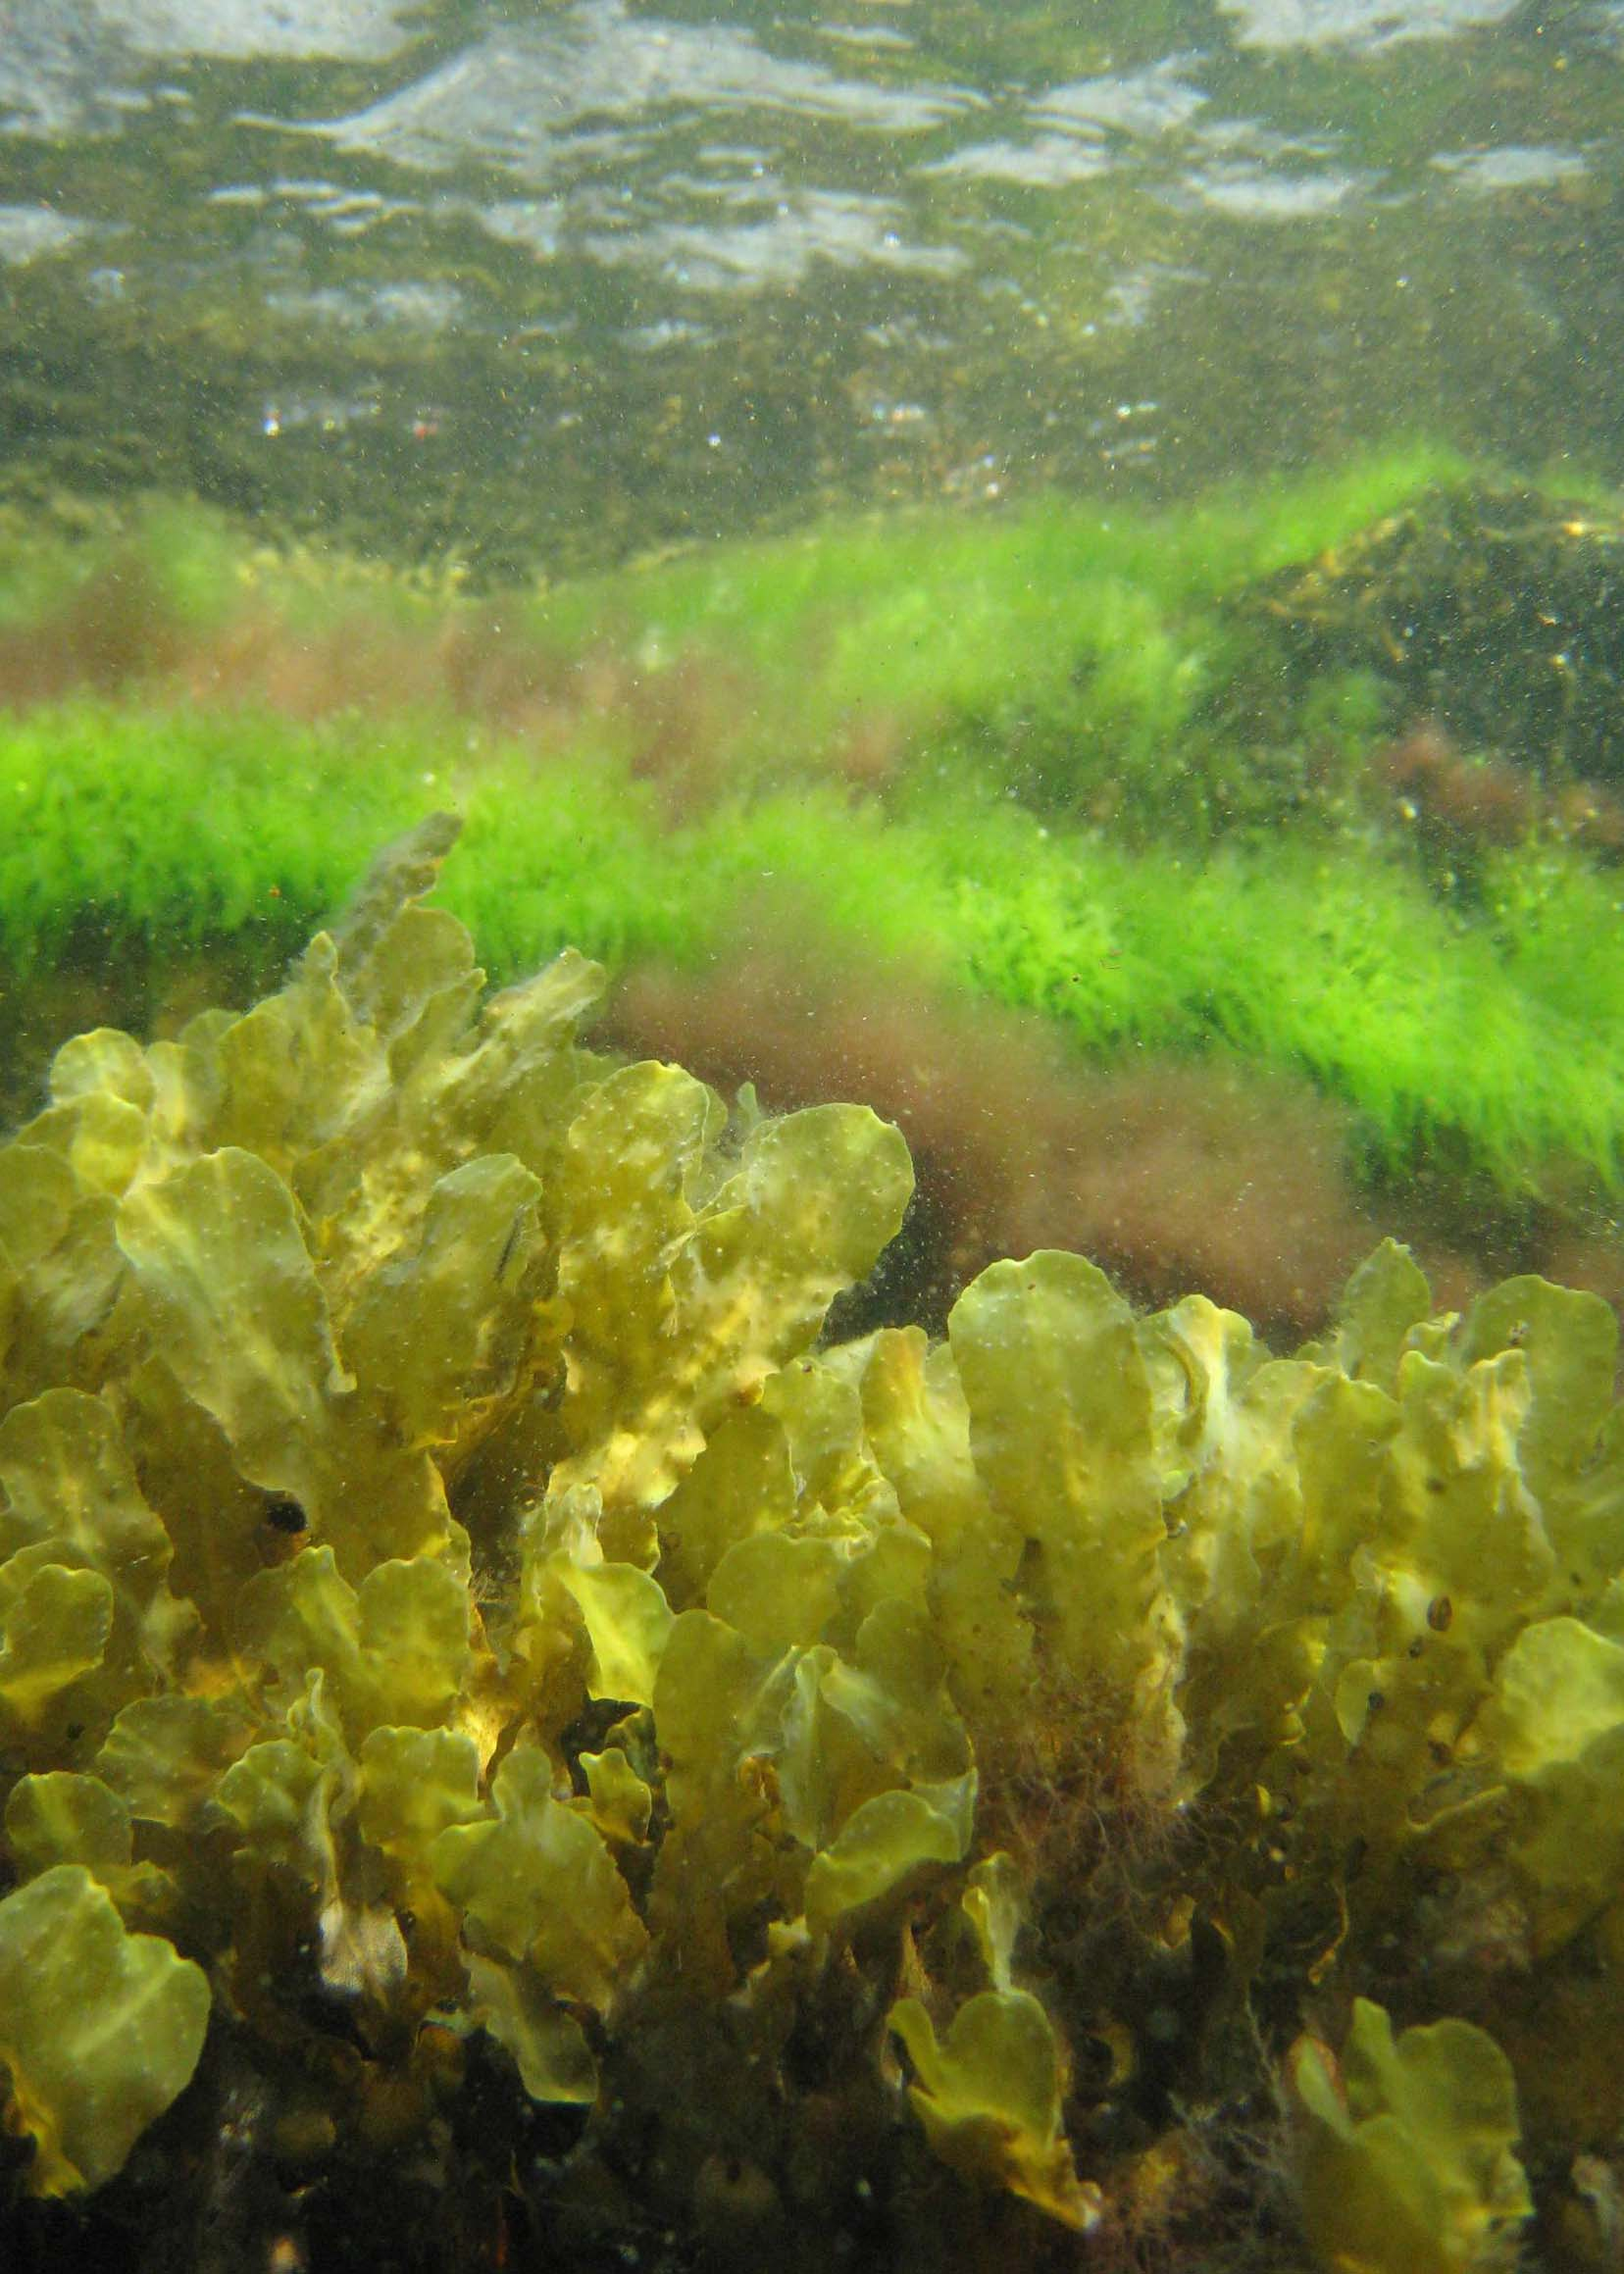 Marin miljöövervakning av vegetationsklädda havsbottnar i Östergötlands